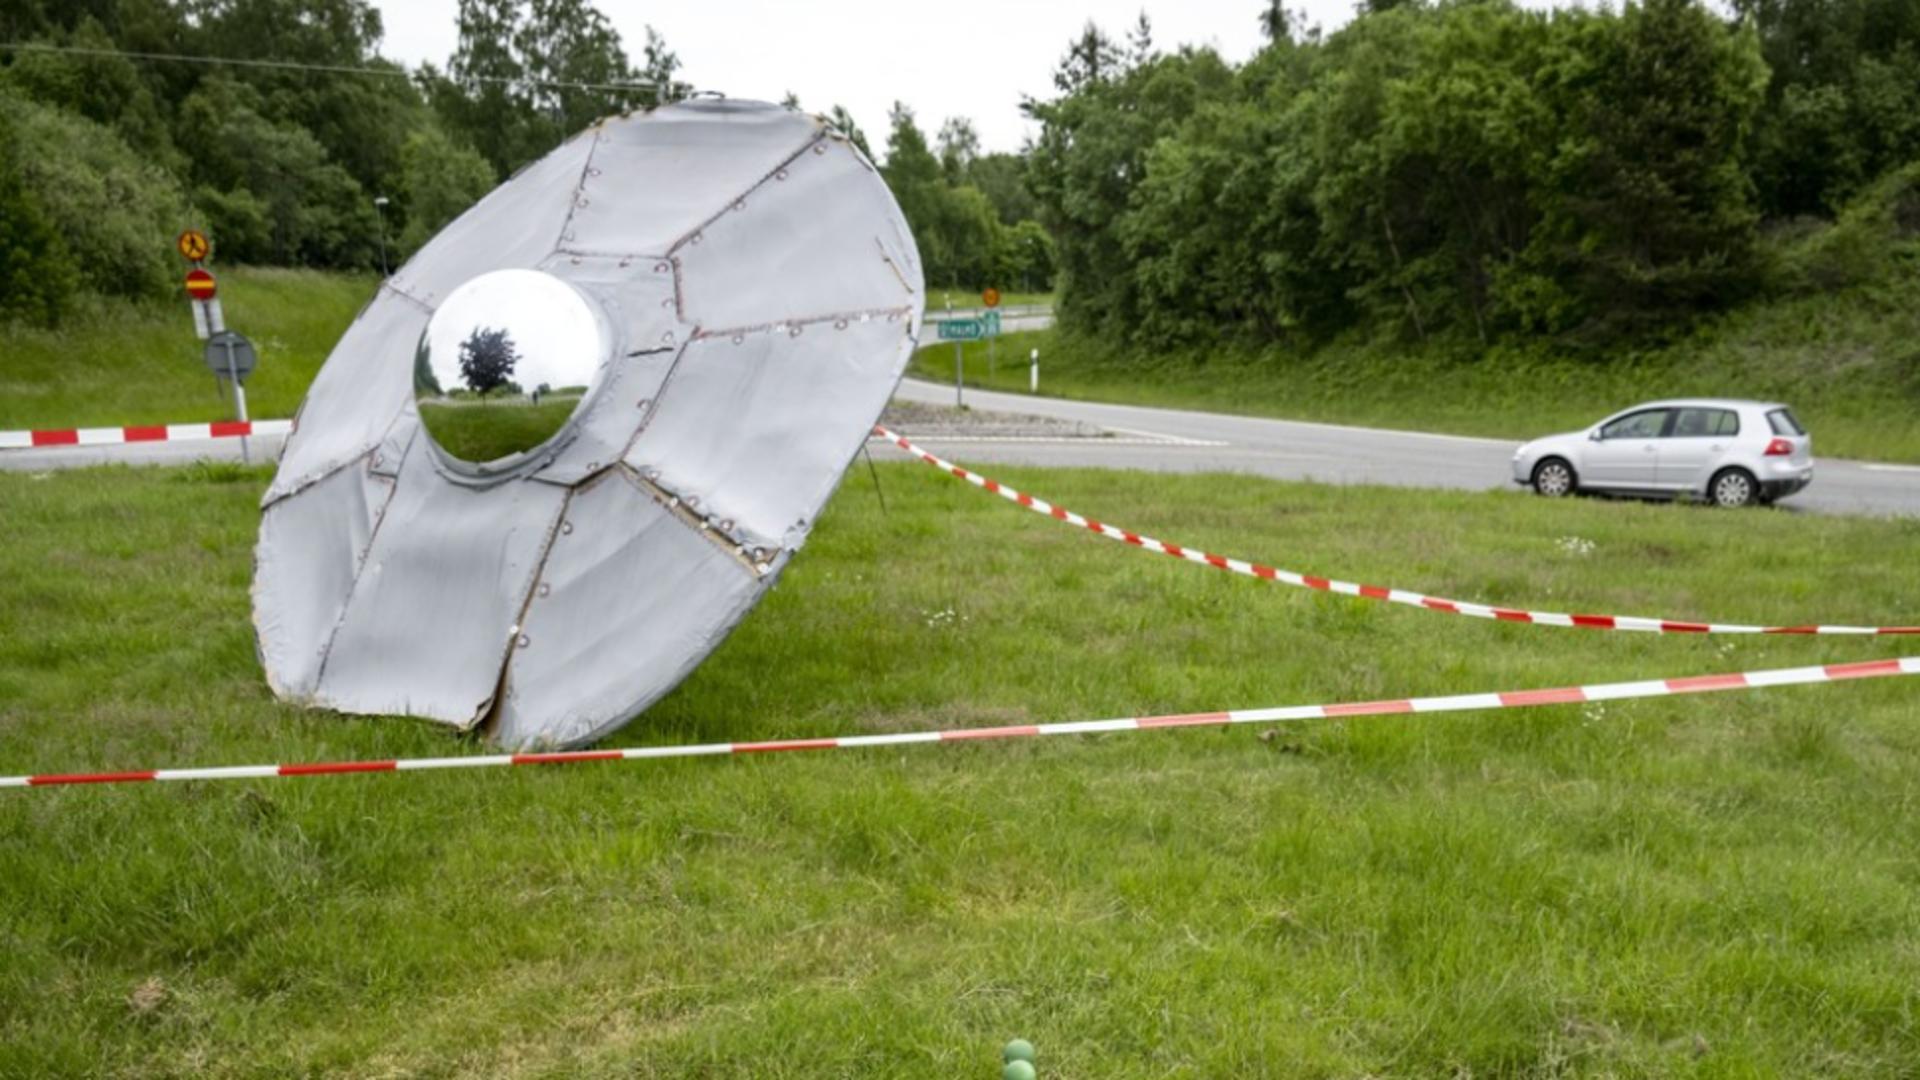 Intersectia UFO în Suedia - Profimedia